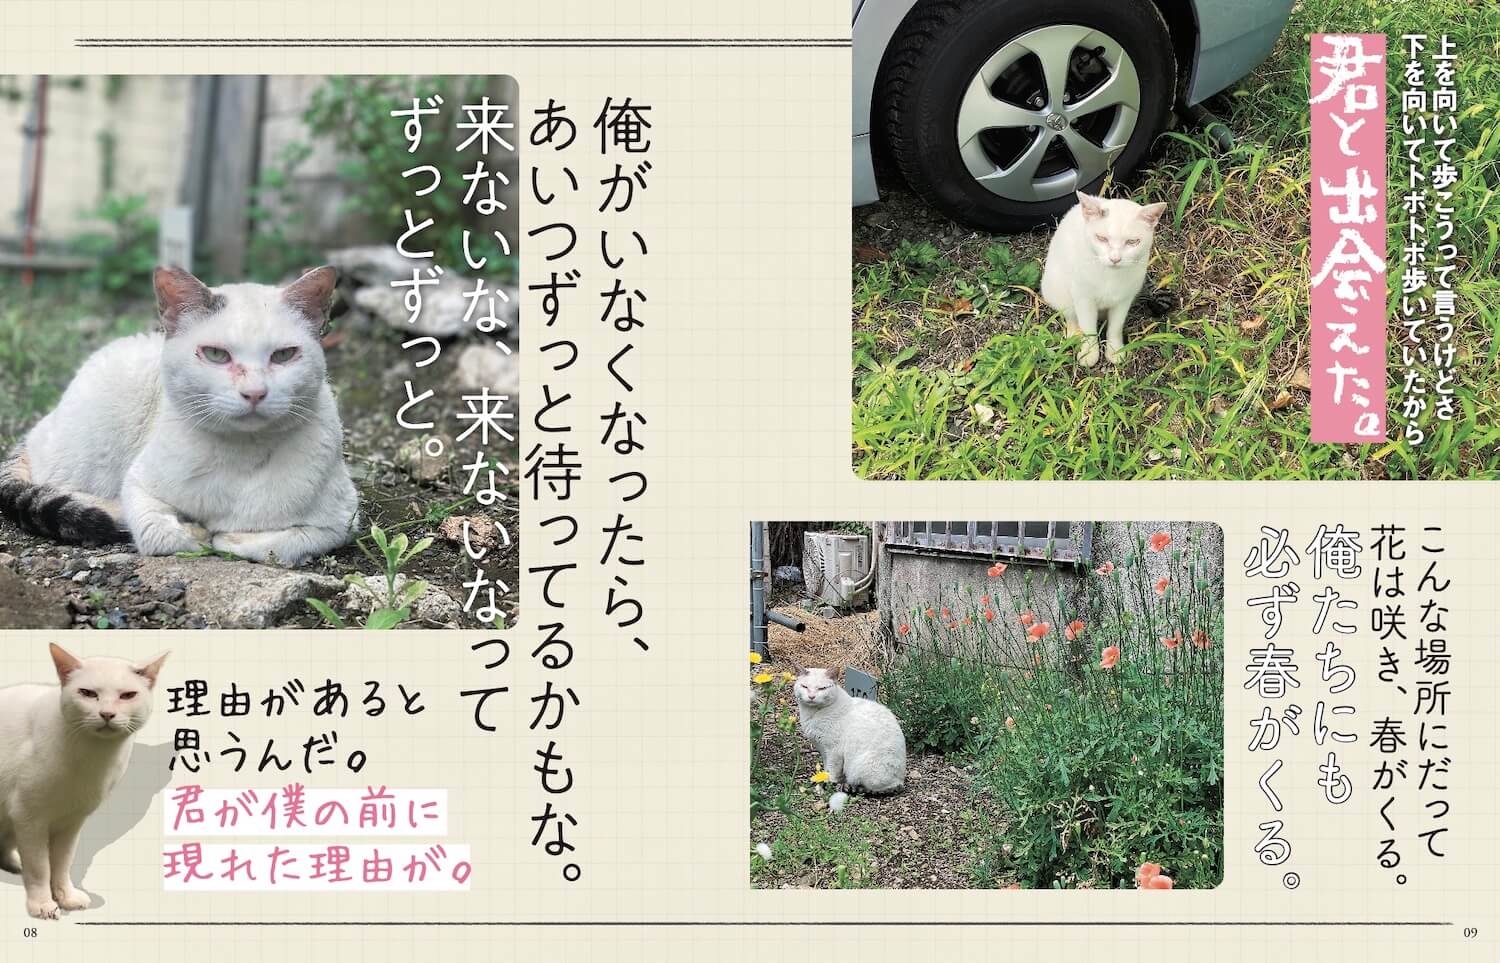 歌舞伎町の駐車場で仲良くなった野良猫の物語 by 書籍「歌舞伎町の野良猫「たにゃ」と僕」